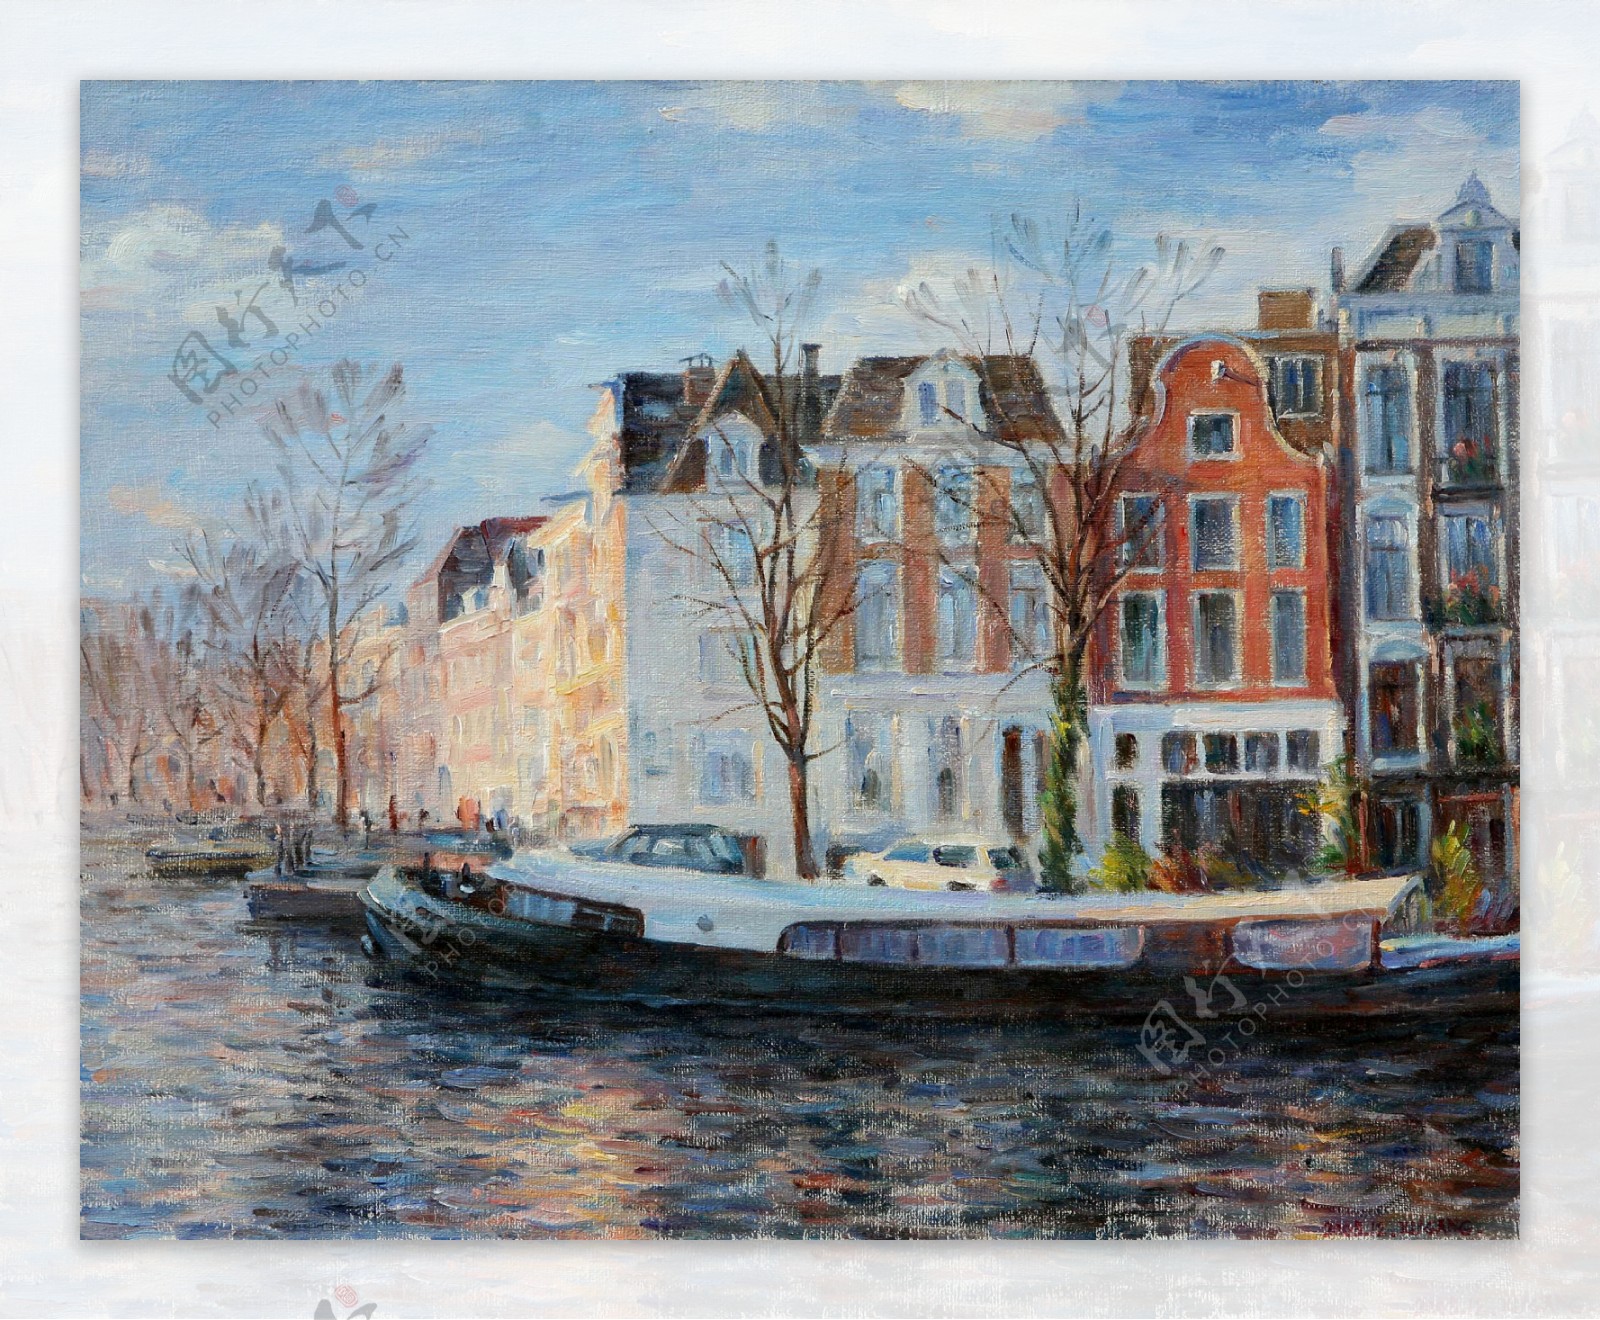 阿姆斯特丹的景色图片